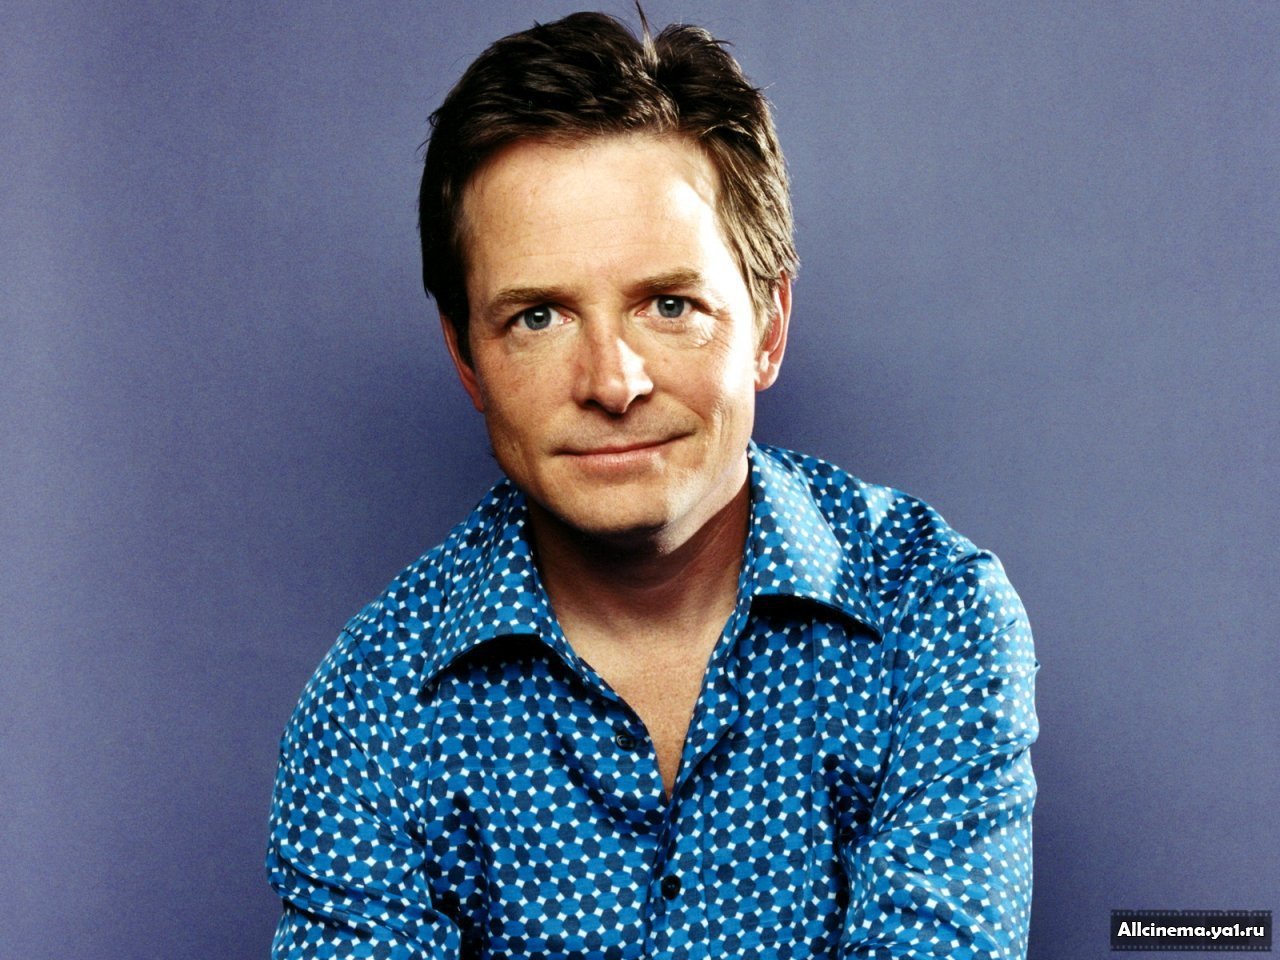 Michael J. Fox - Wikipedia